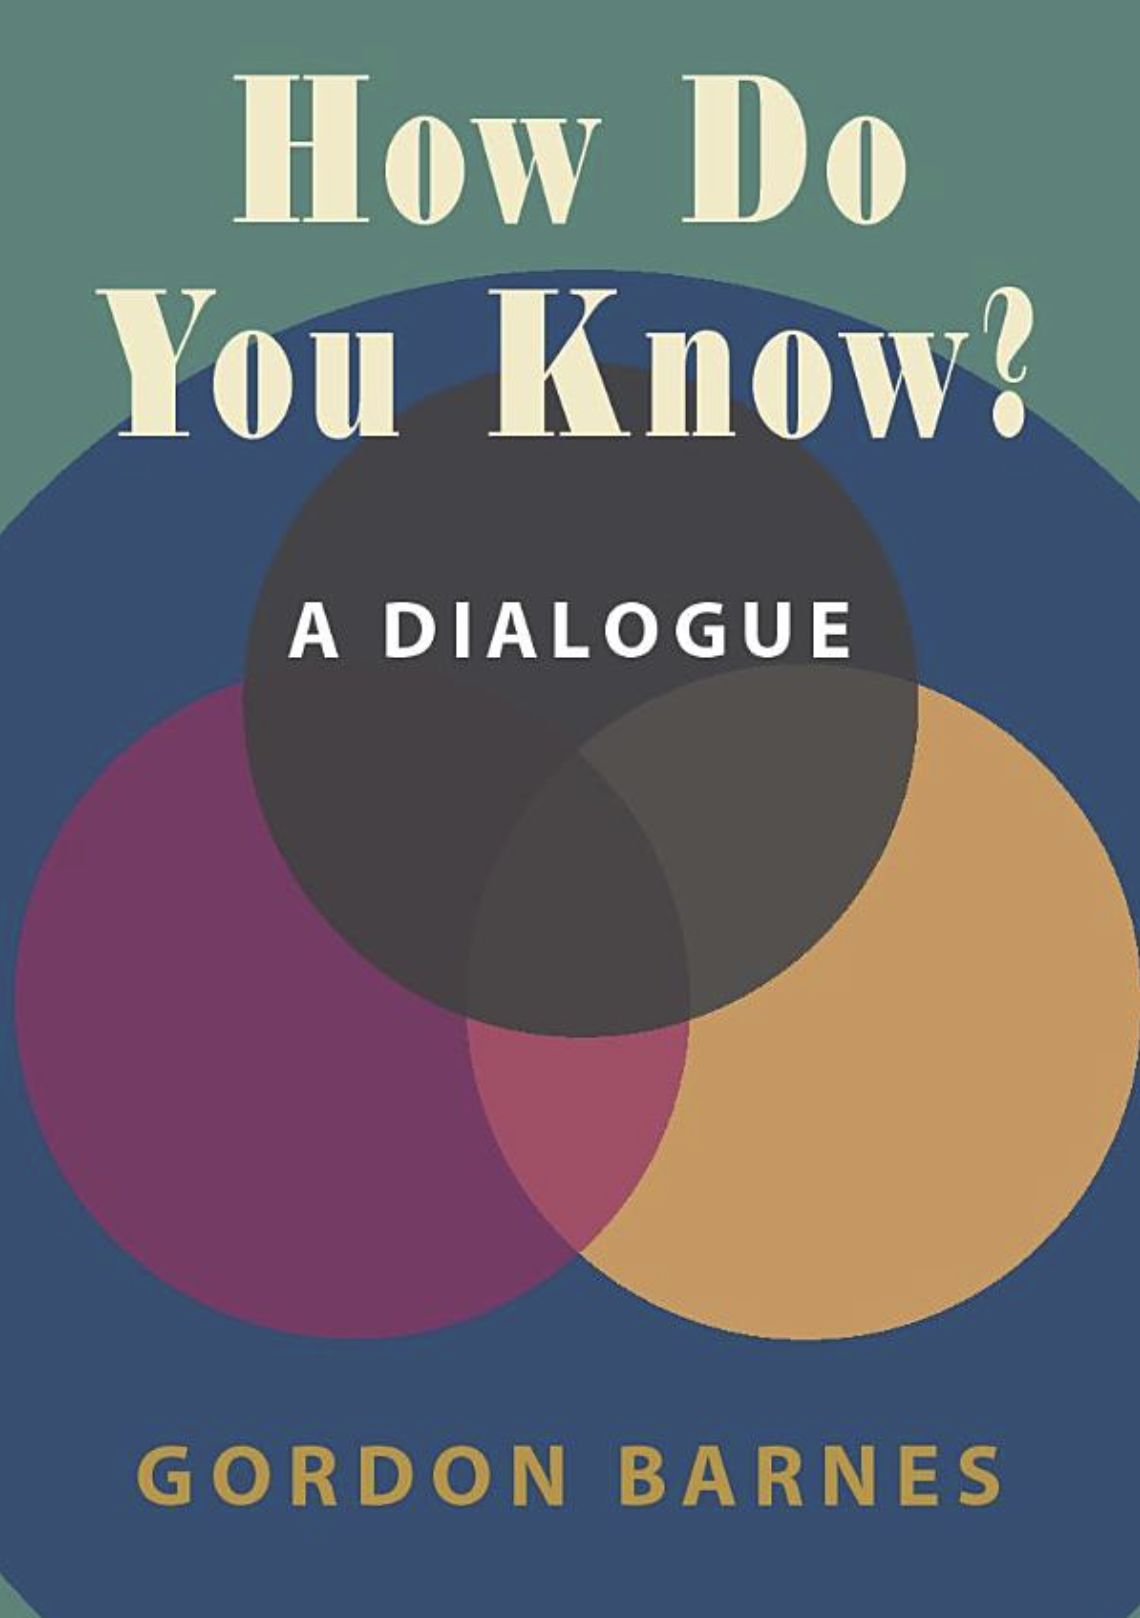 How Do You Know? A Dialogue